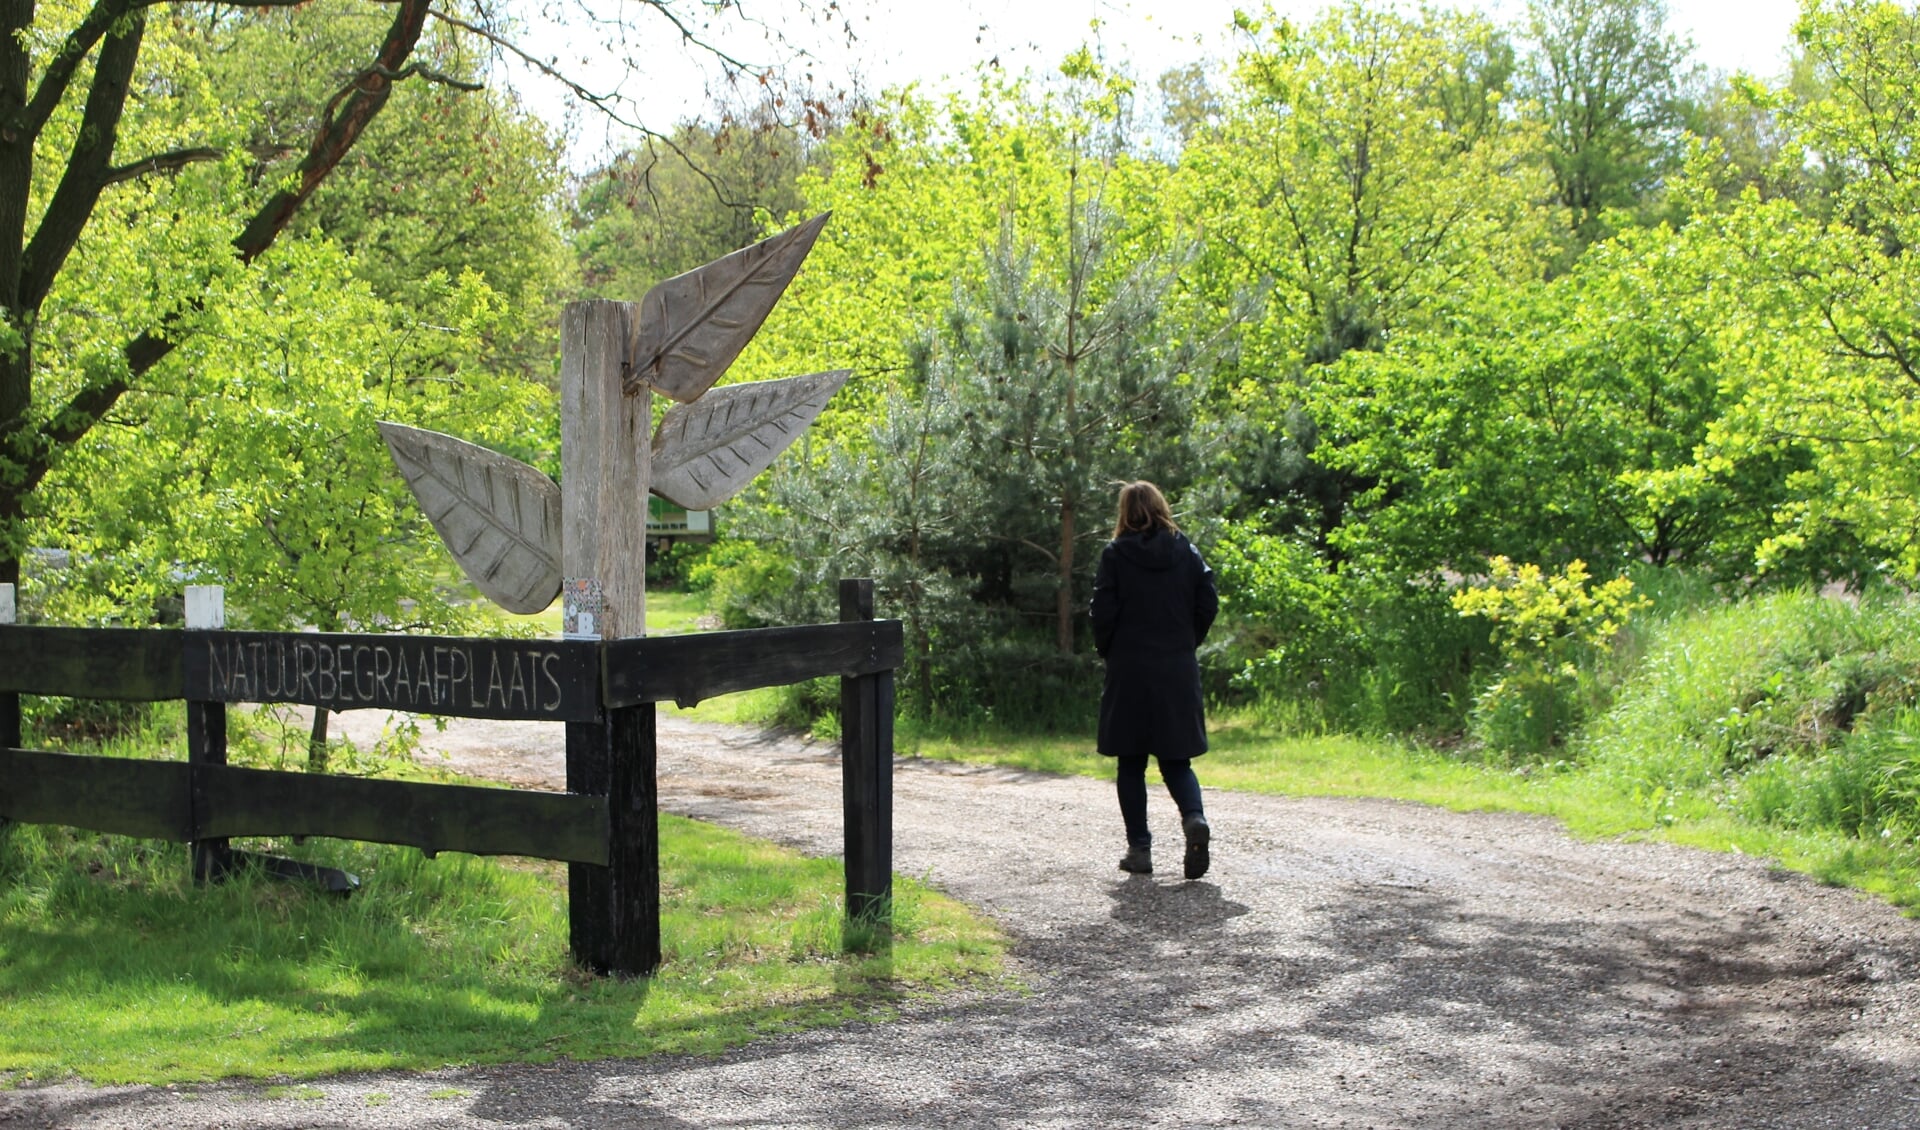 Natuurbegraafplaats Weverslo houdt een open dag; kom ook eens een kijkje nemen! (foto: Aileen van Tilburg)